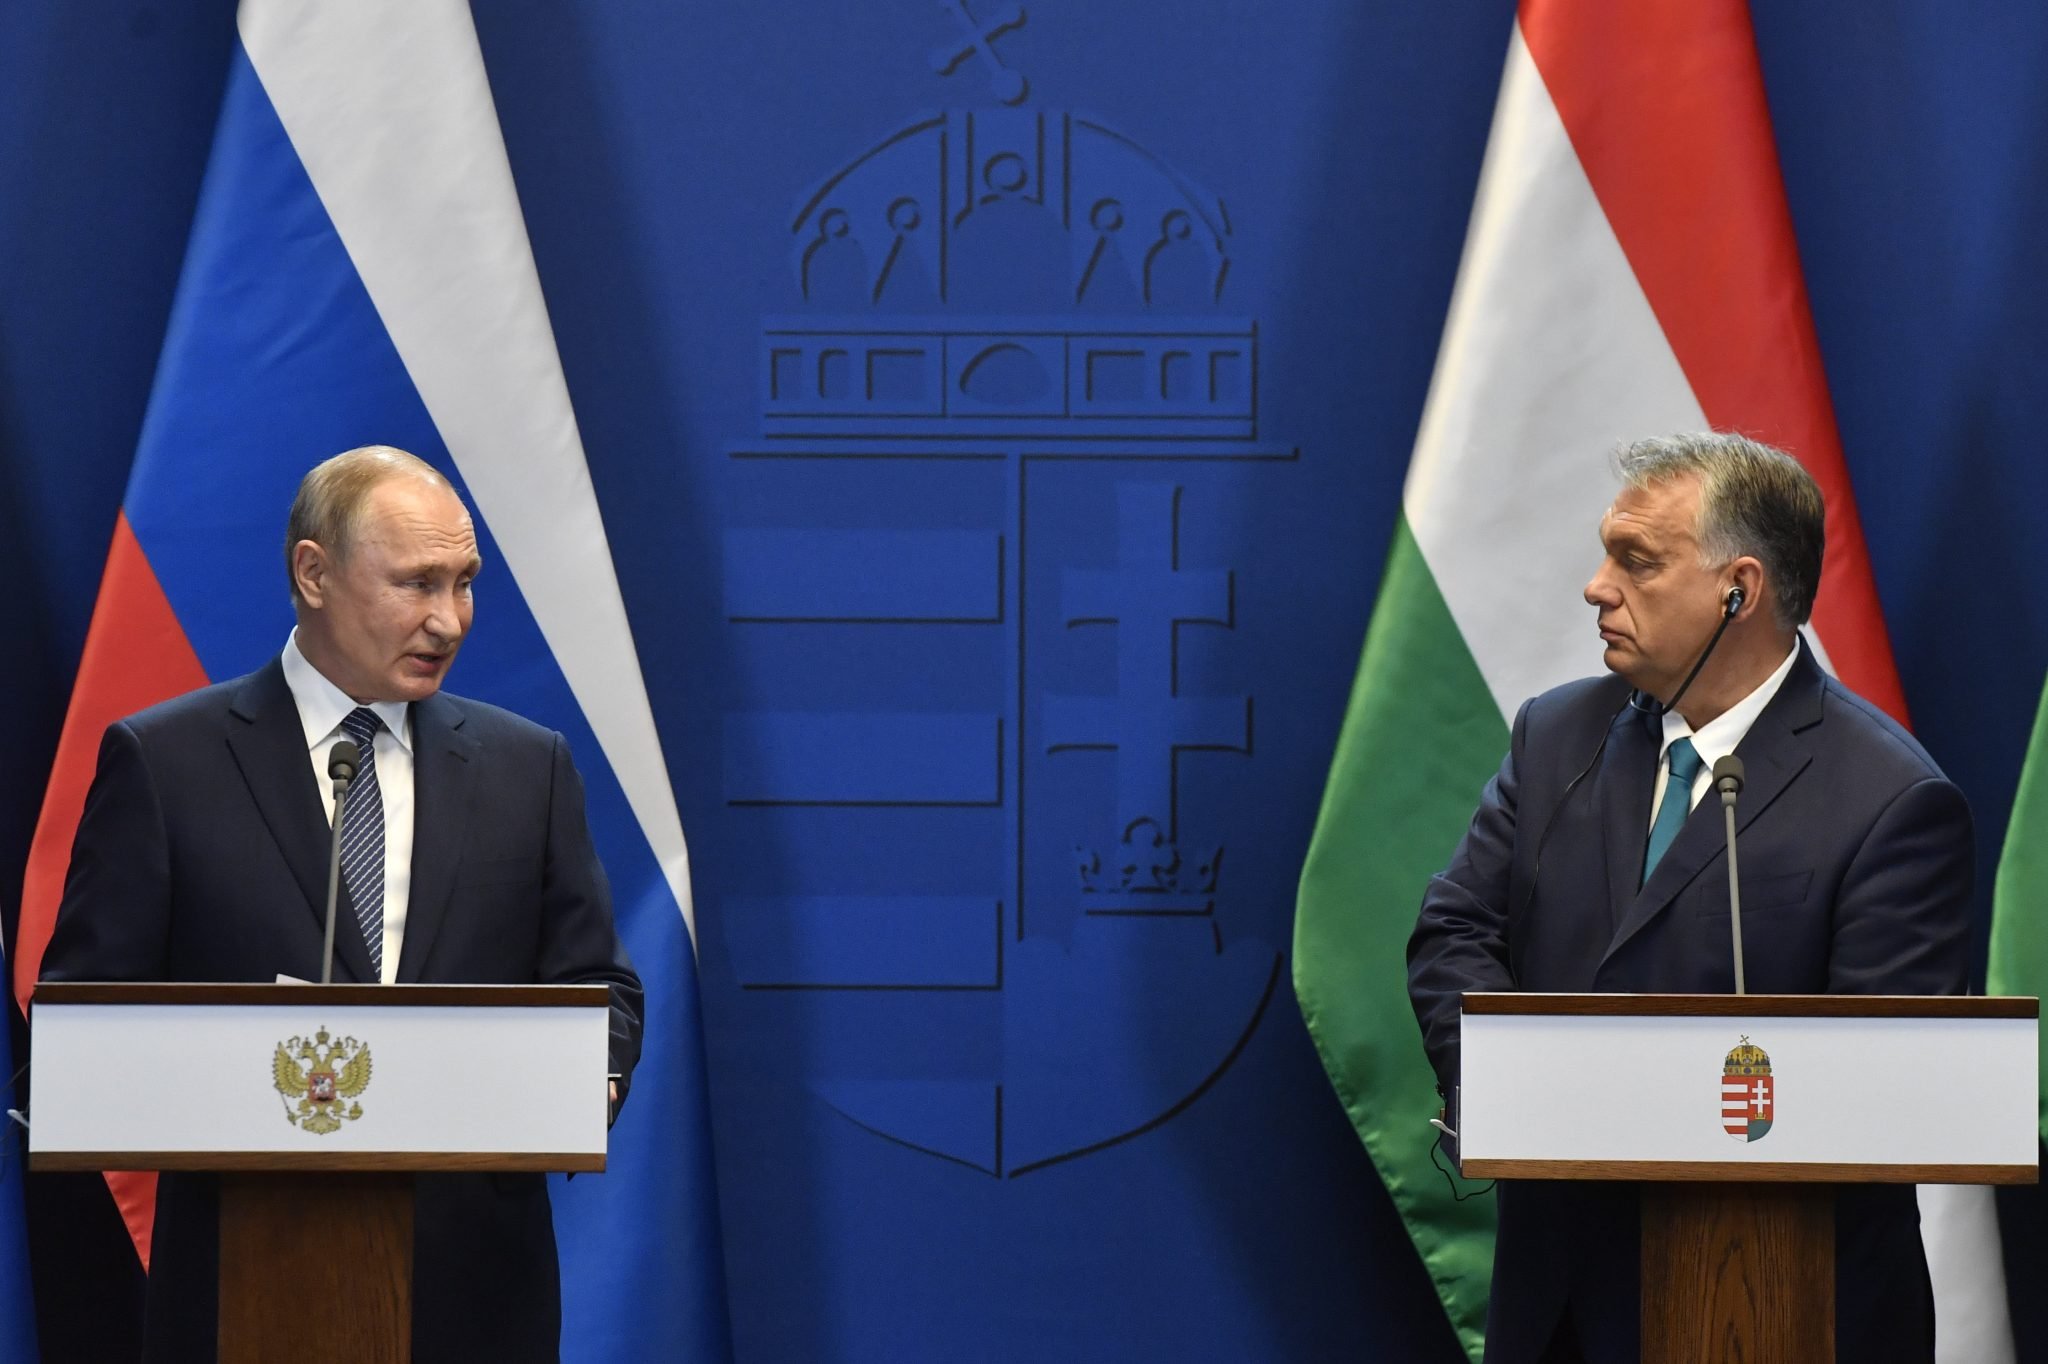 Угорщина погодилася платити за нафту і газ за російською схемою